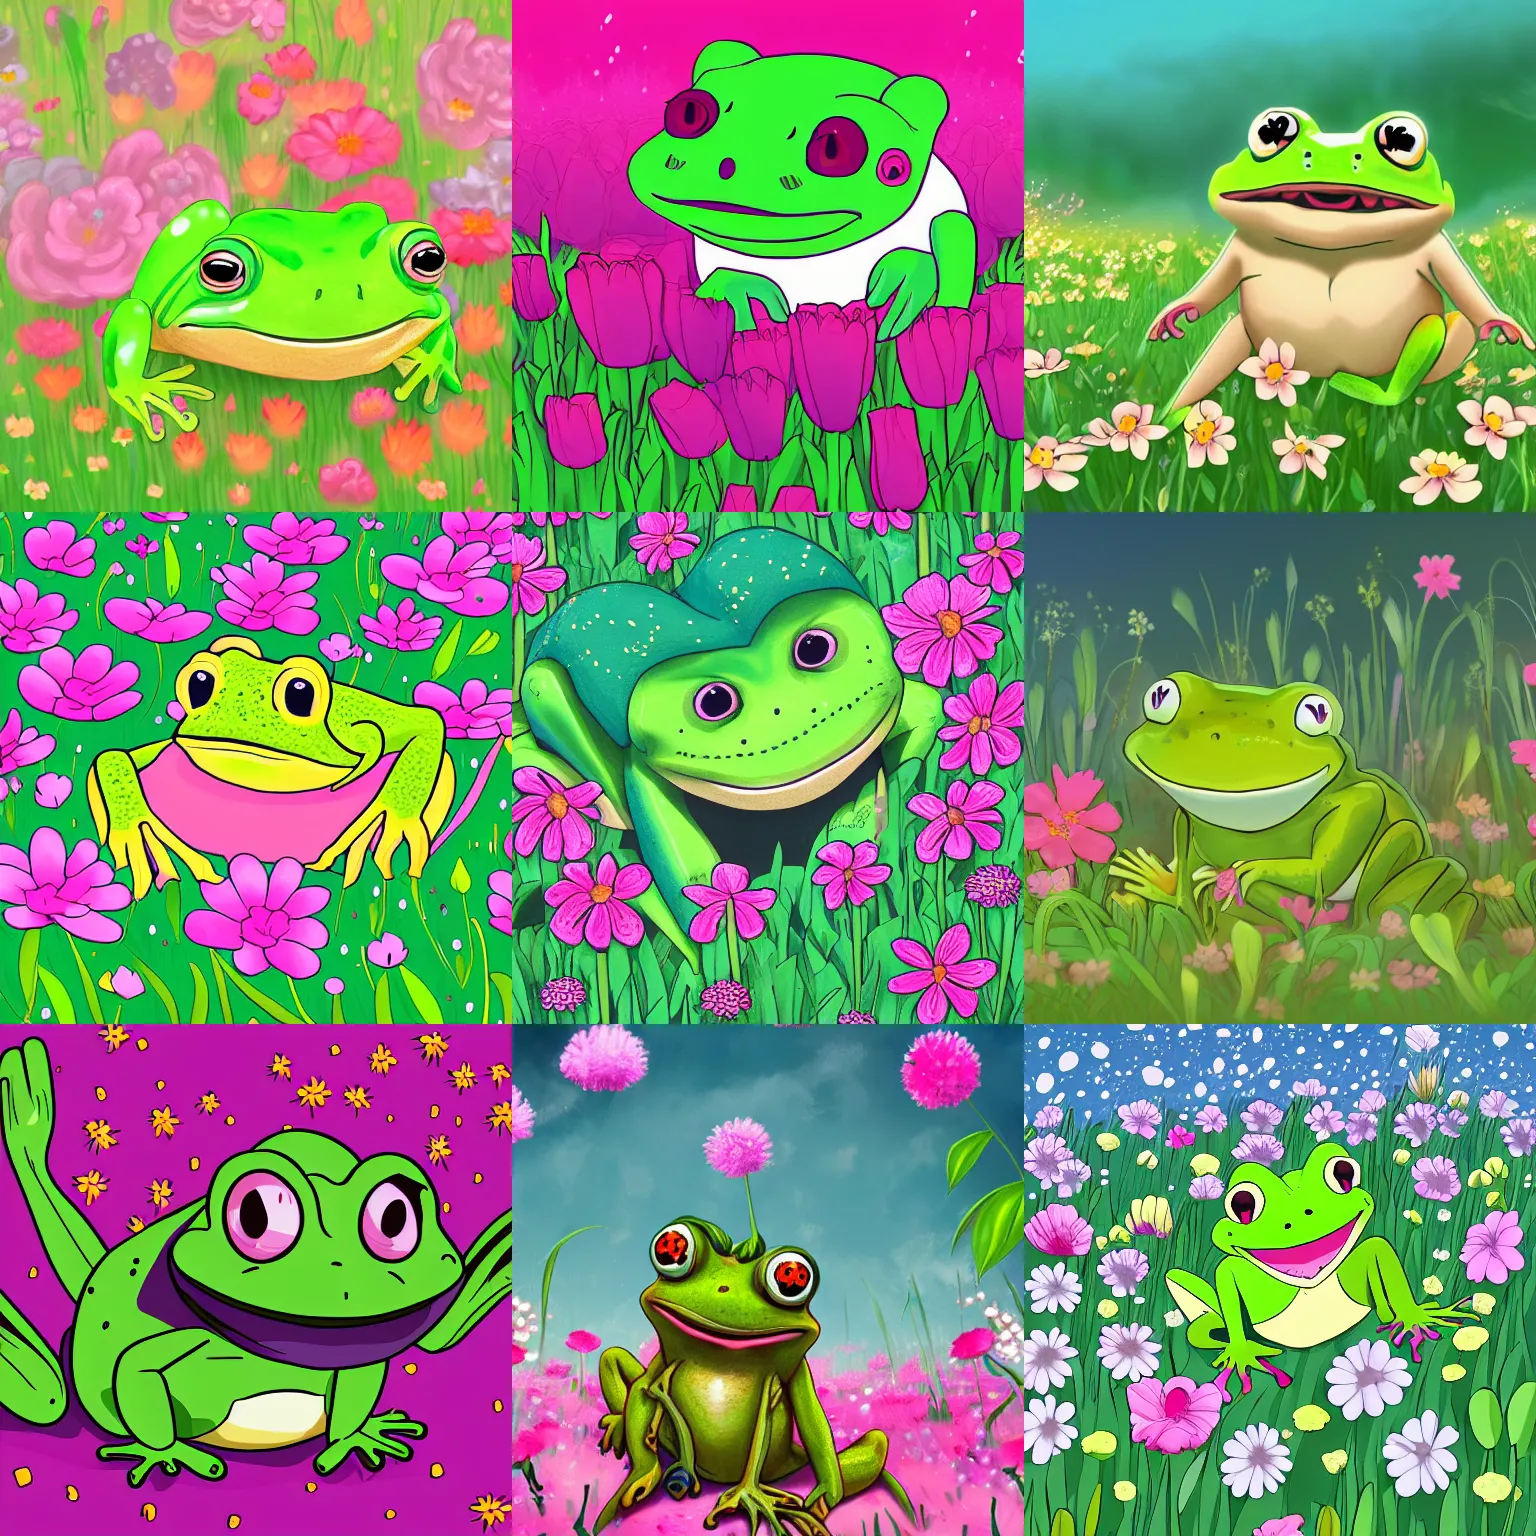 Prompt: illustration of a cute happy frog in a field of flowers, digital art, cute, shoujo, trending on artstation, detailed, anime 4 k